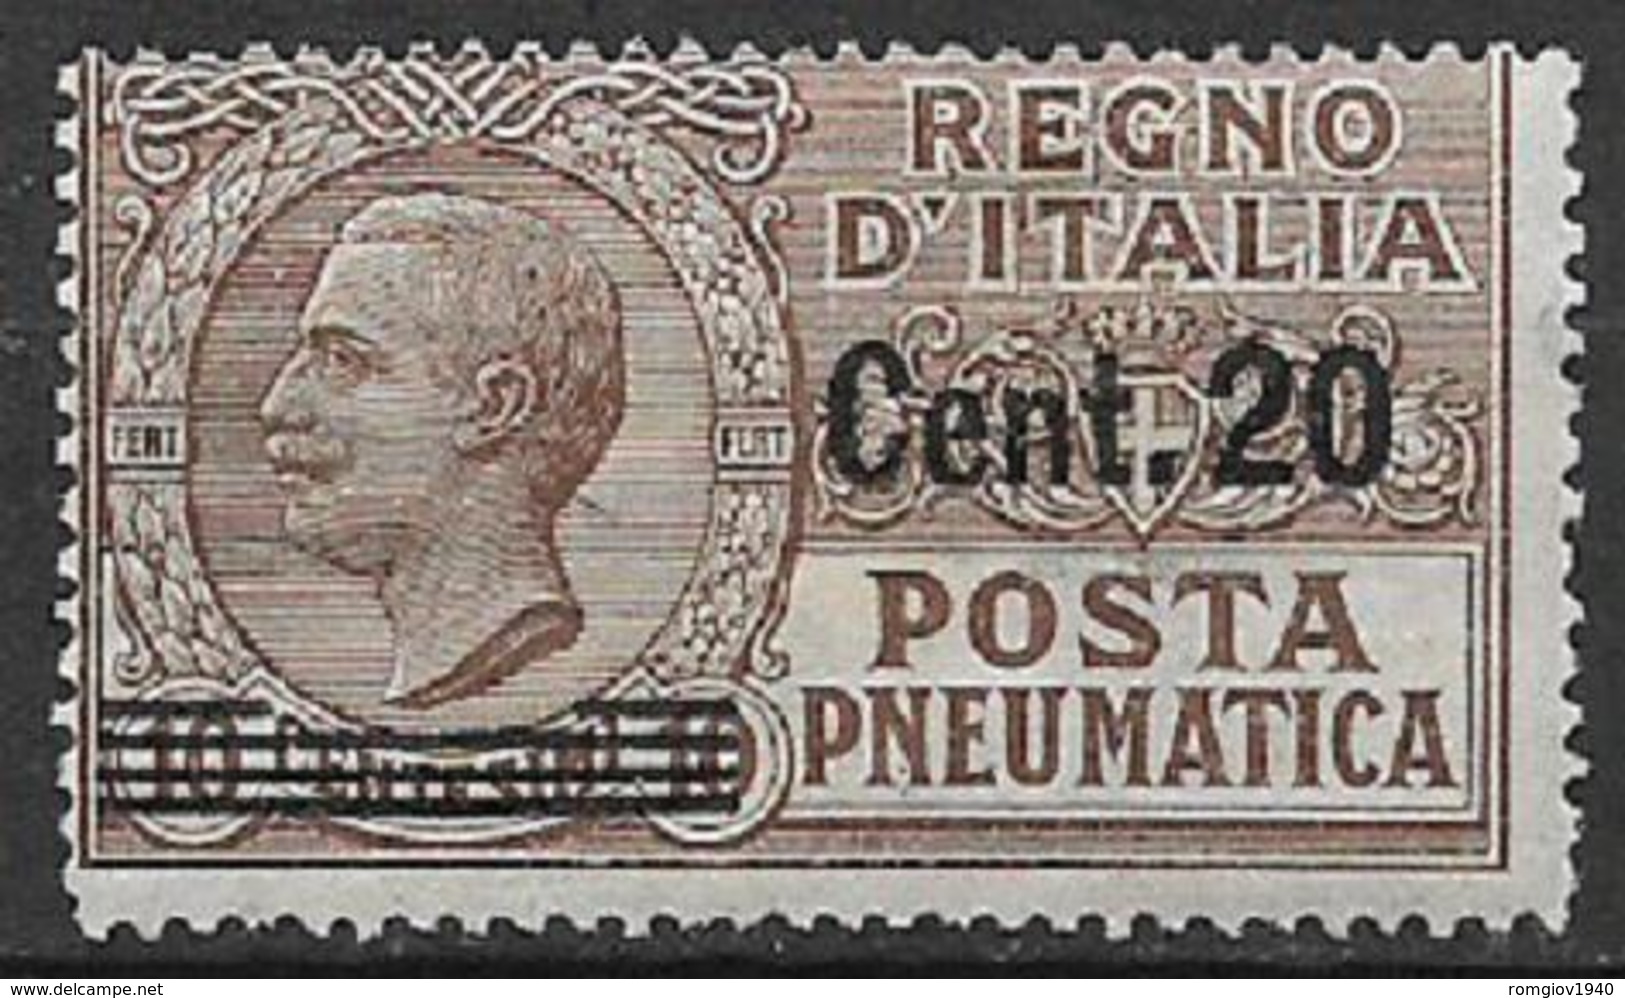 REGNO D'ITALIA POSTA PNEUMATICA 1913-23  EFFIGE DI V.EMANUELE III  SASS. 5 MNH XF - Pneumatic Mail